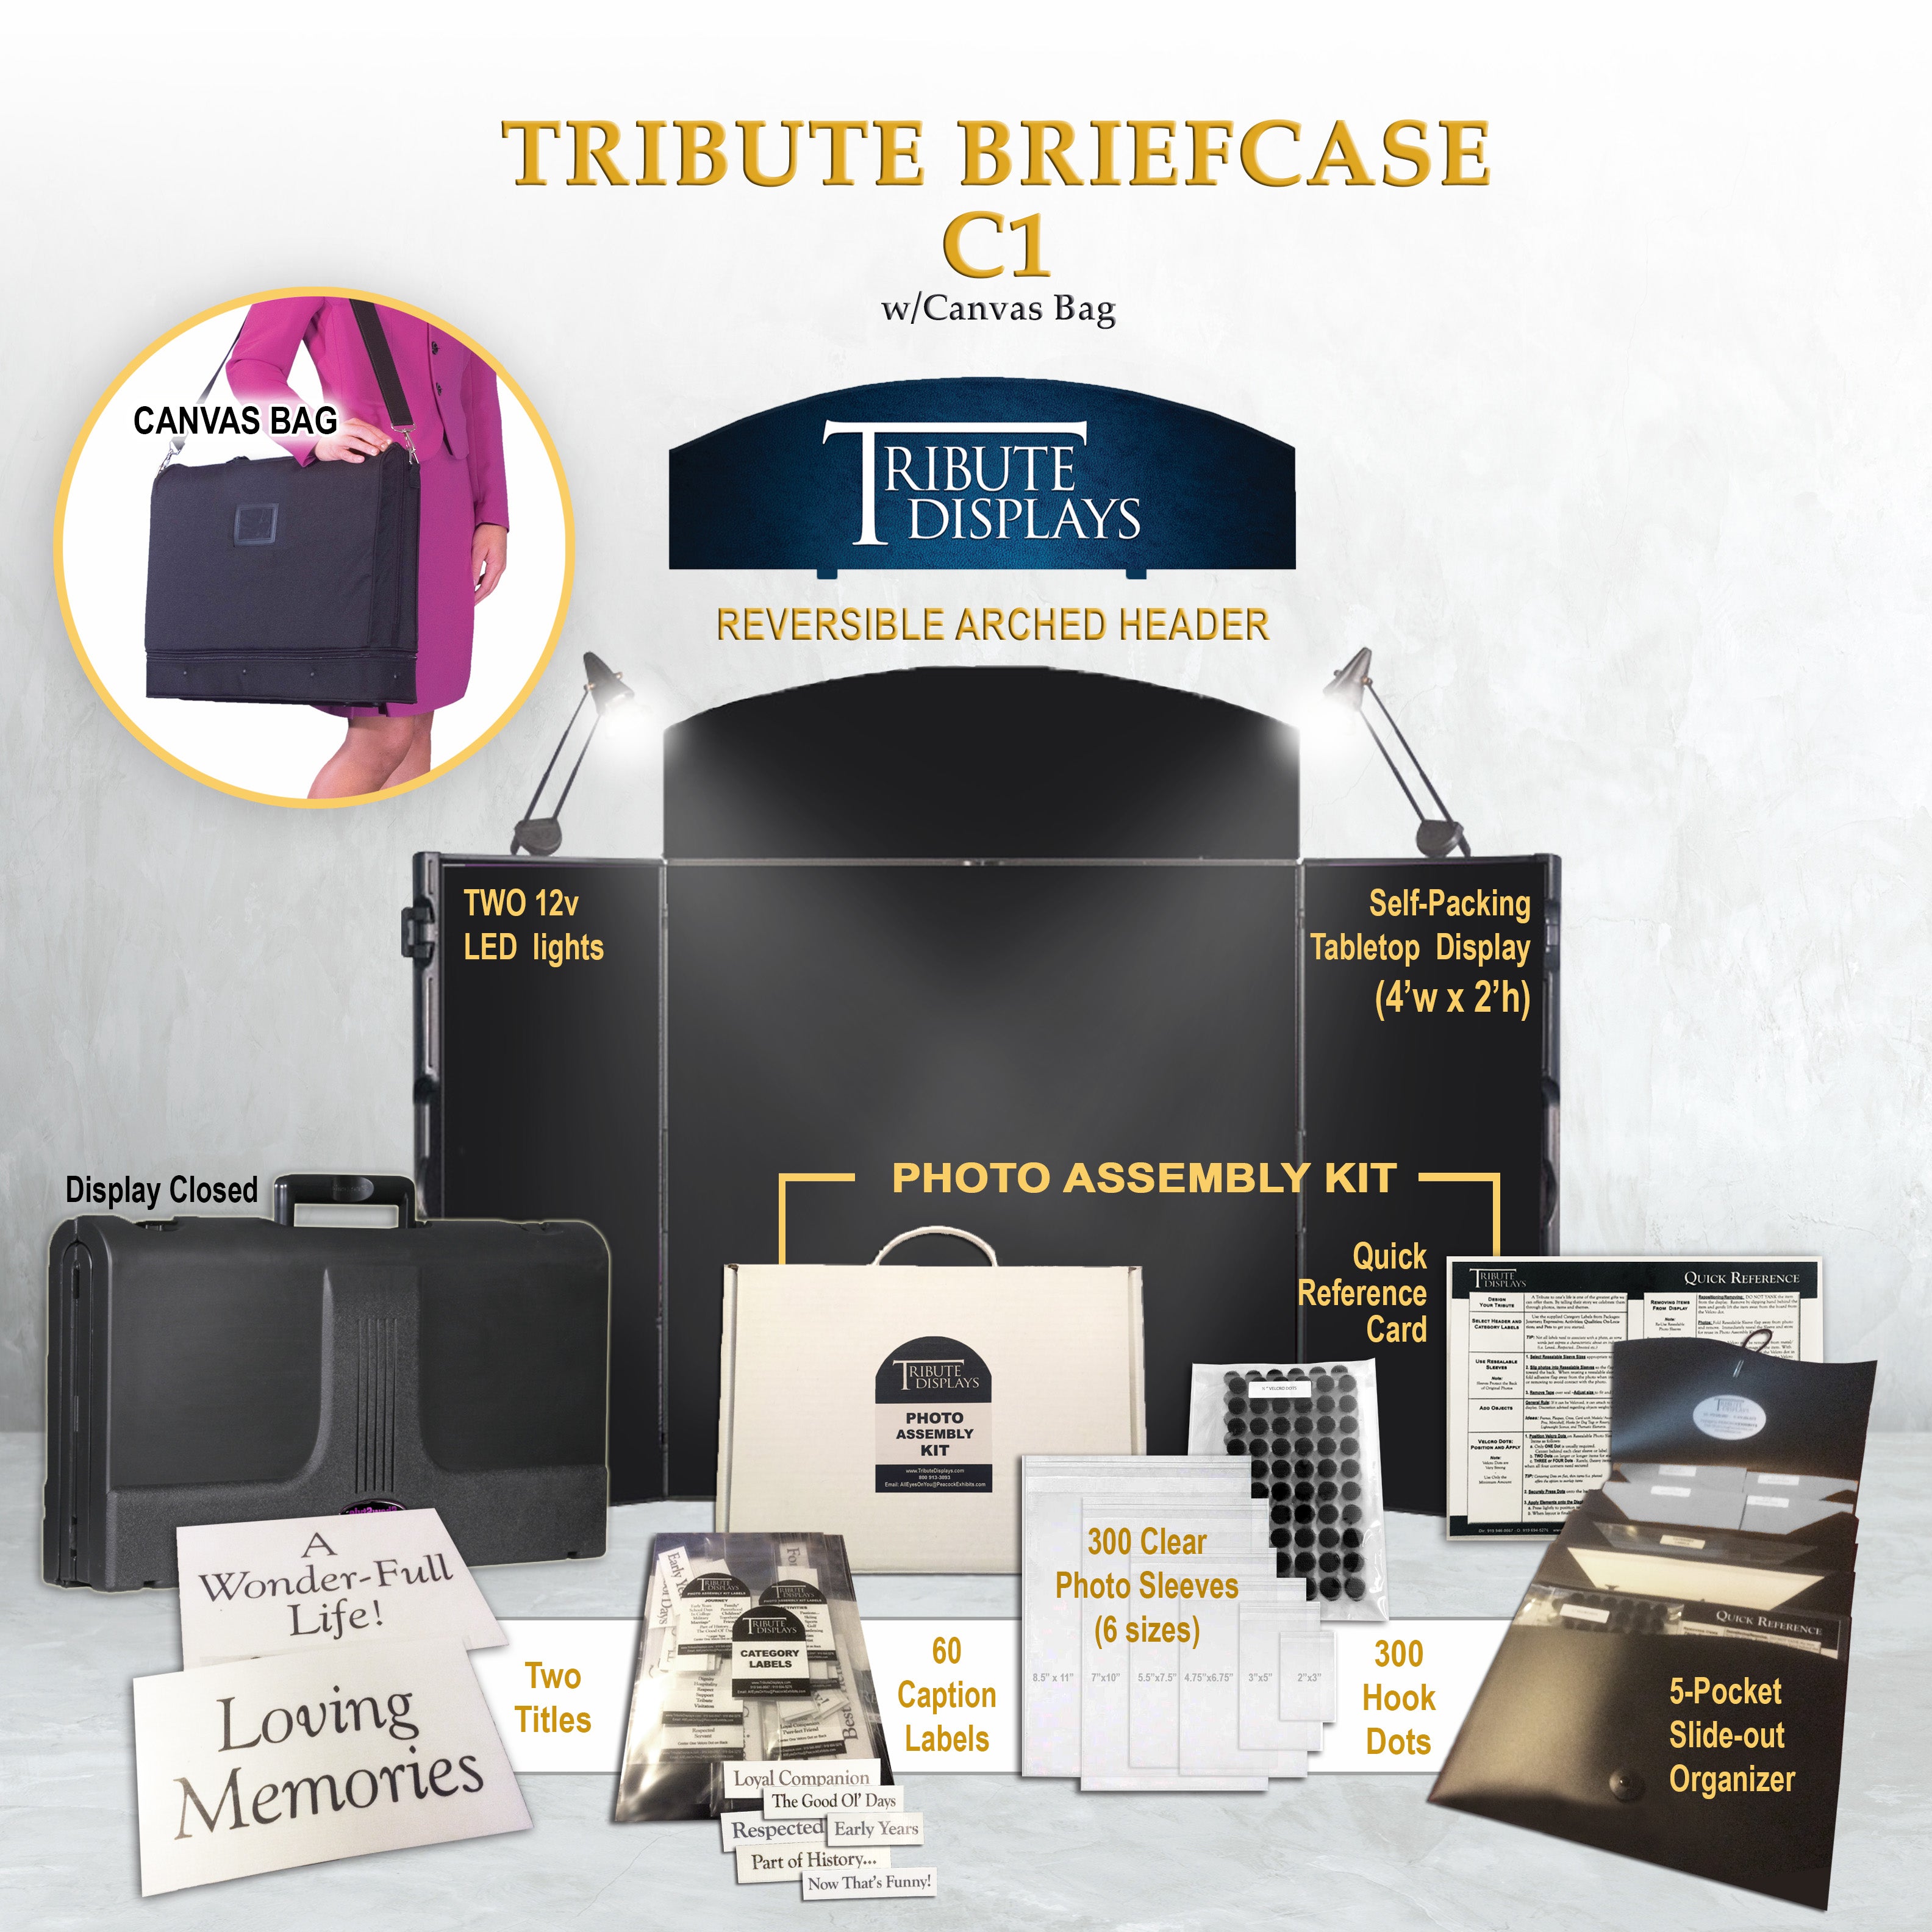 System Bundle "CC": Tribute "Double" Briefcase